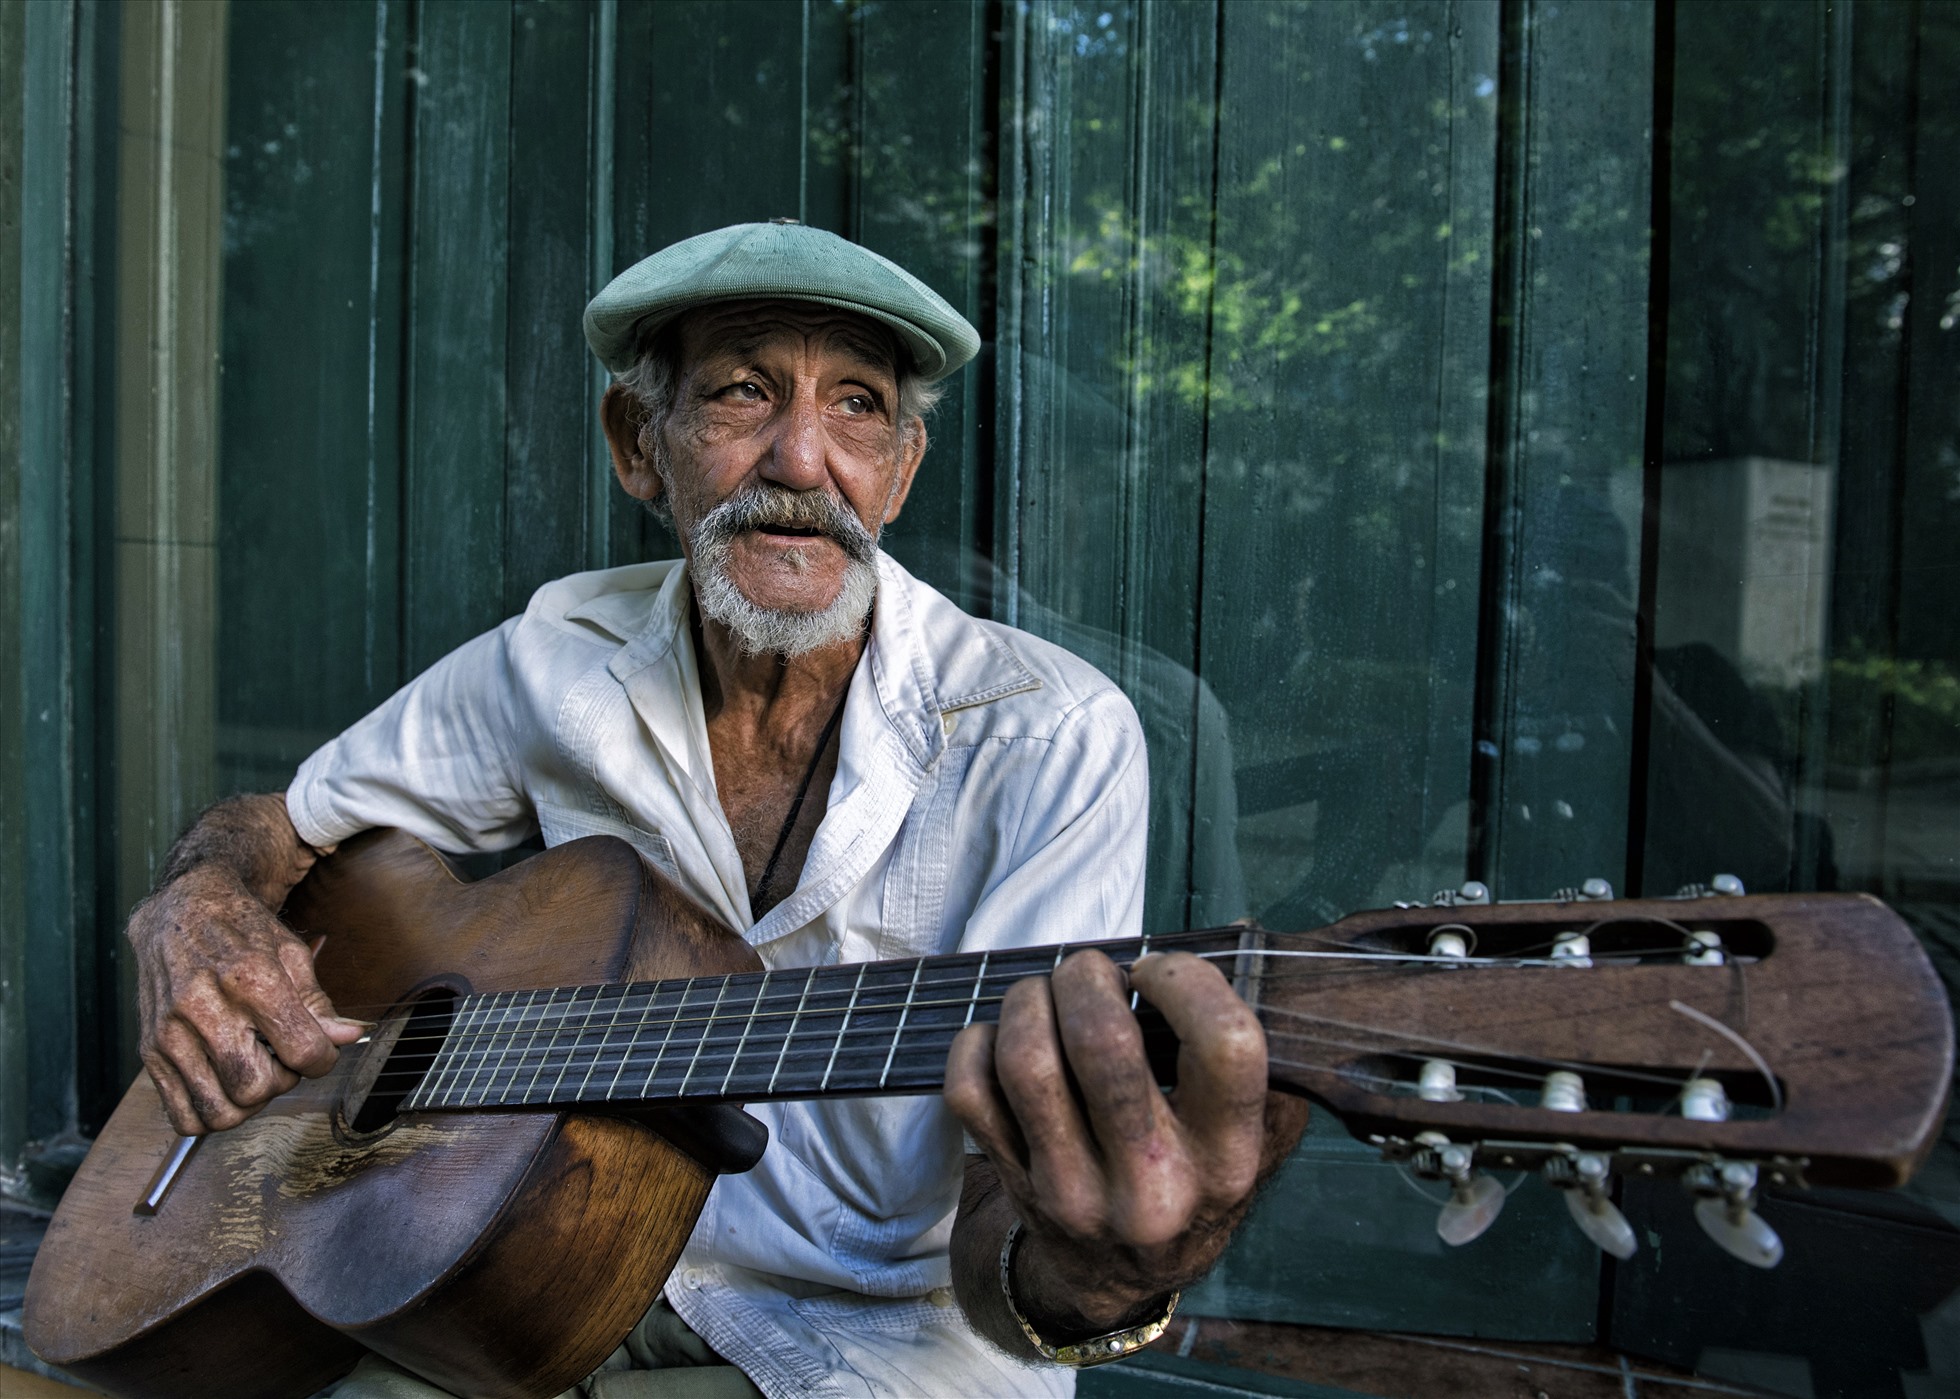 Đôi mắt đượm buồn của ông già chơi đàn guitar trên phố.